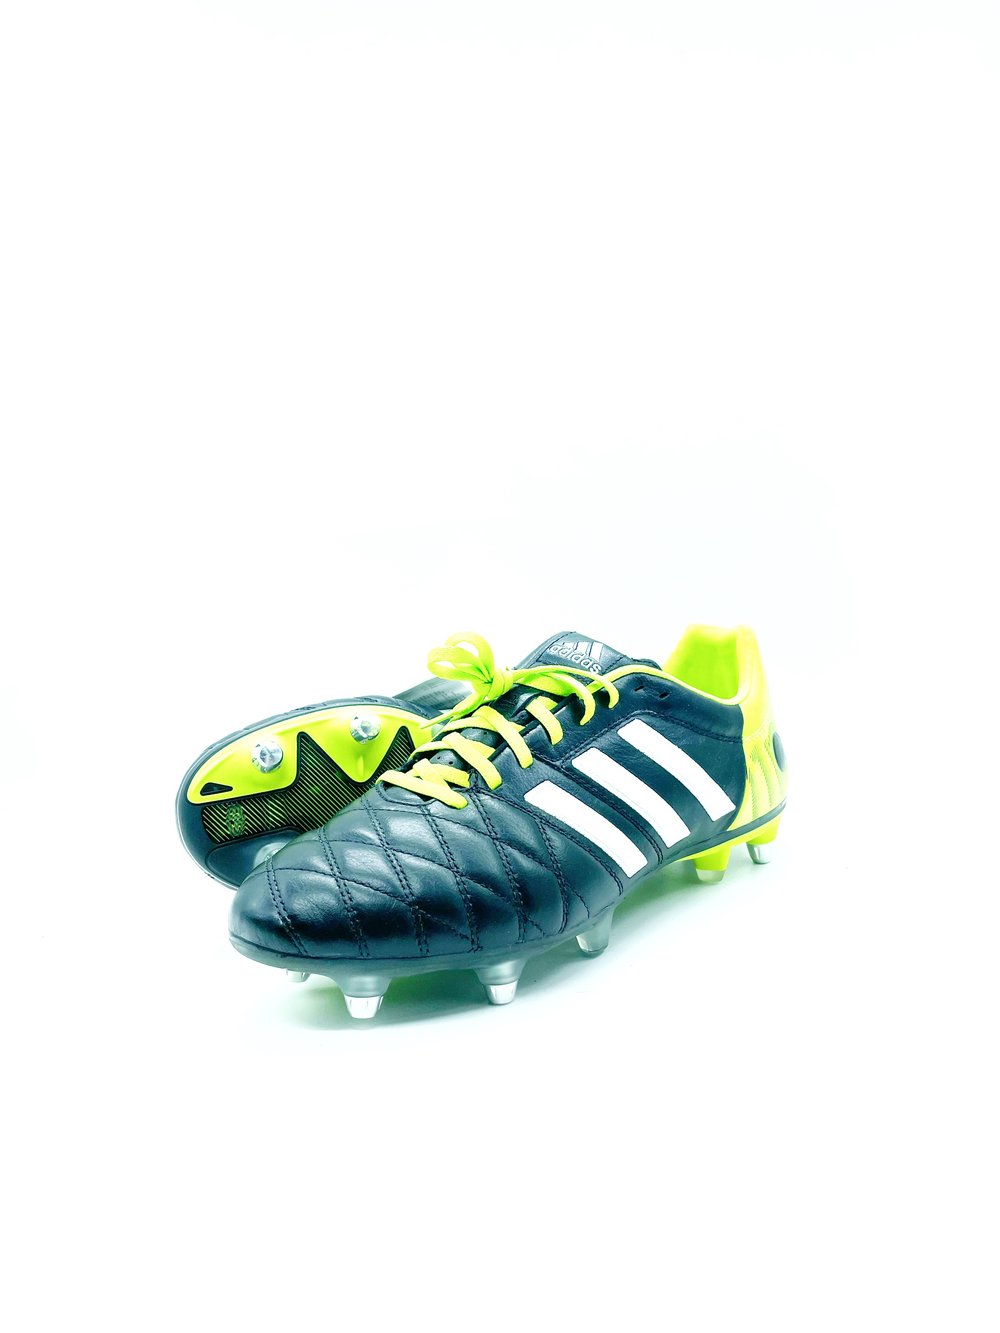 Tbtclassicfootballboots — Adidas 11pro Black SG